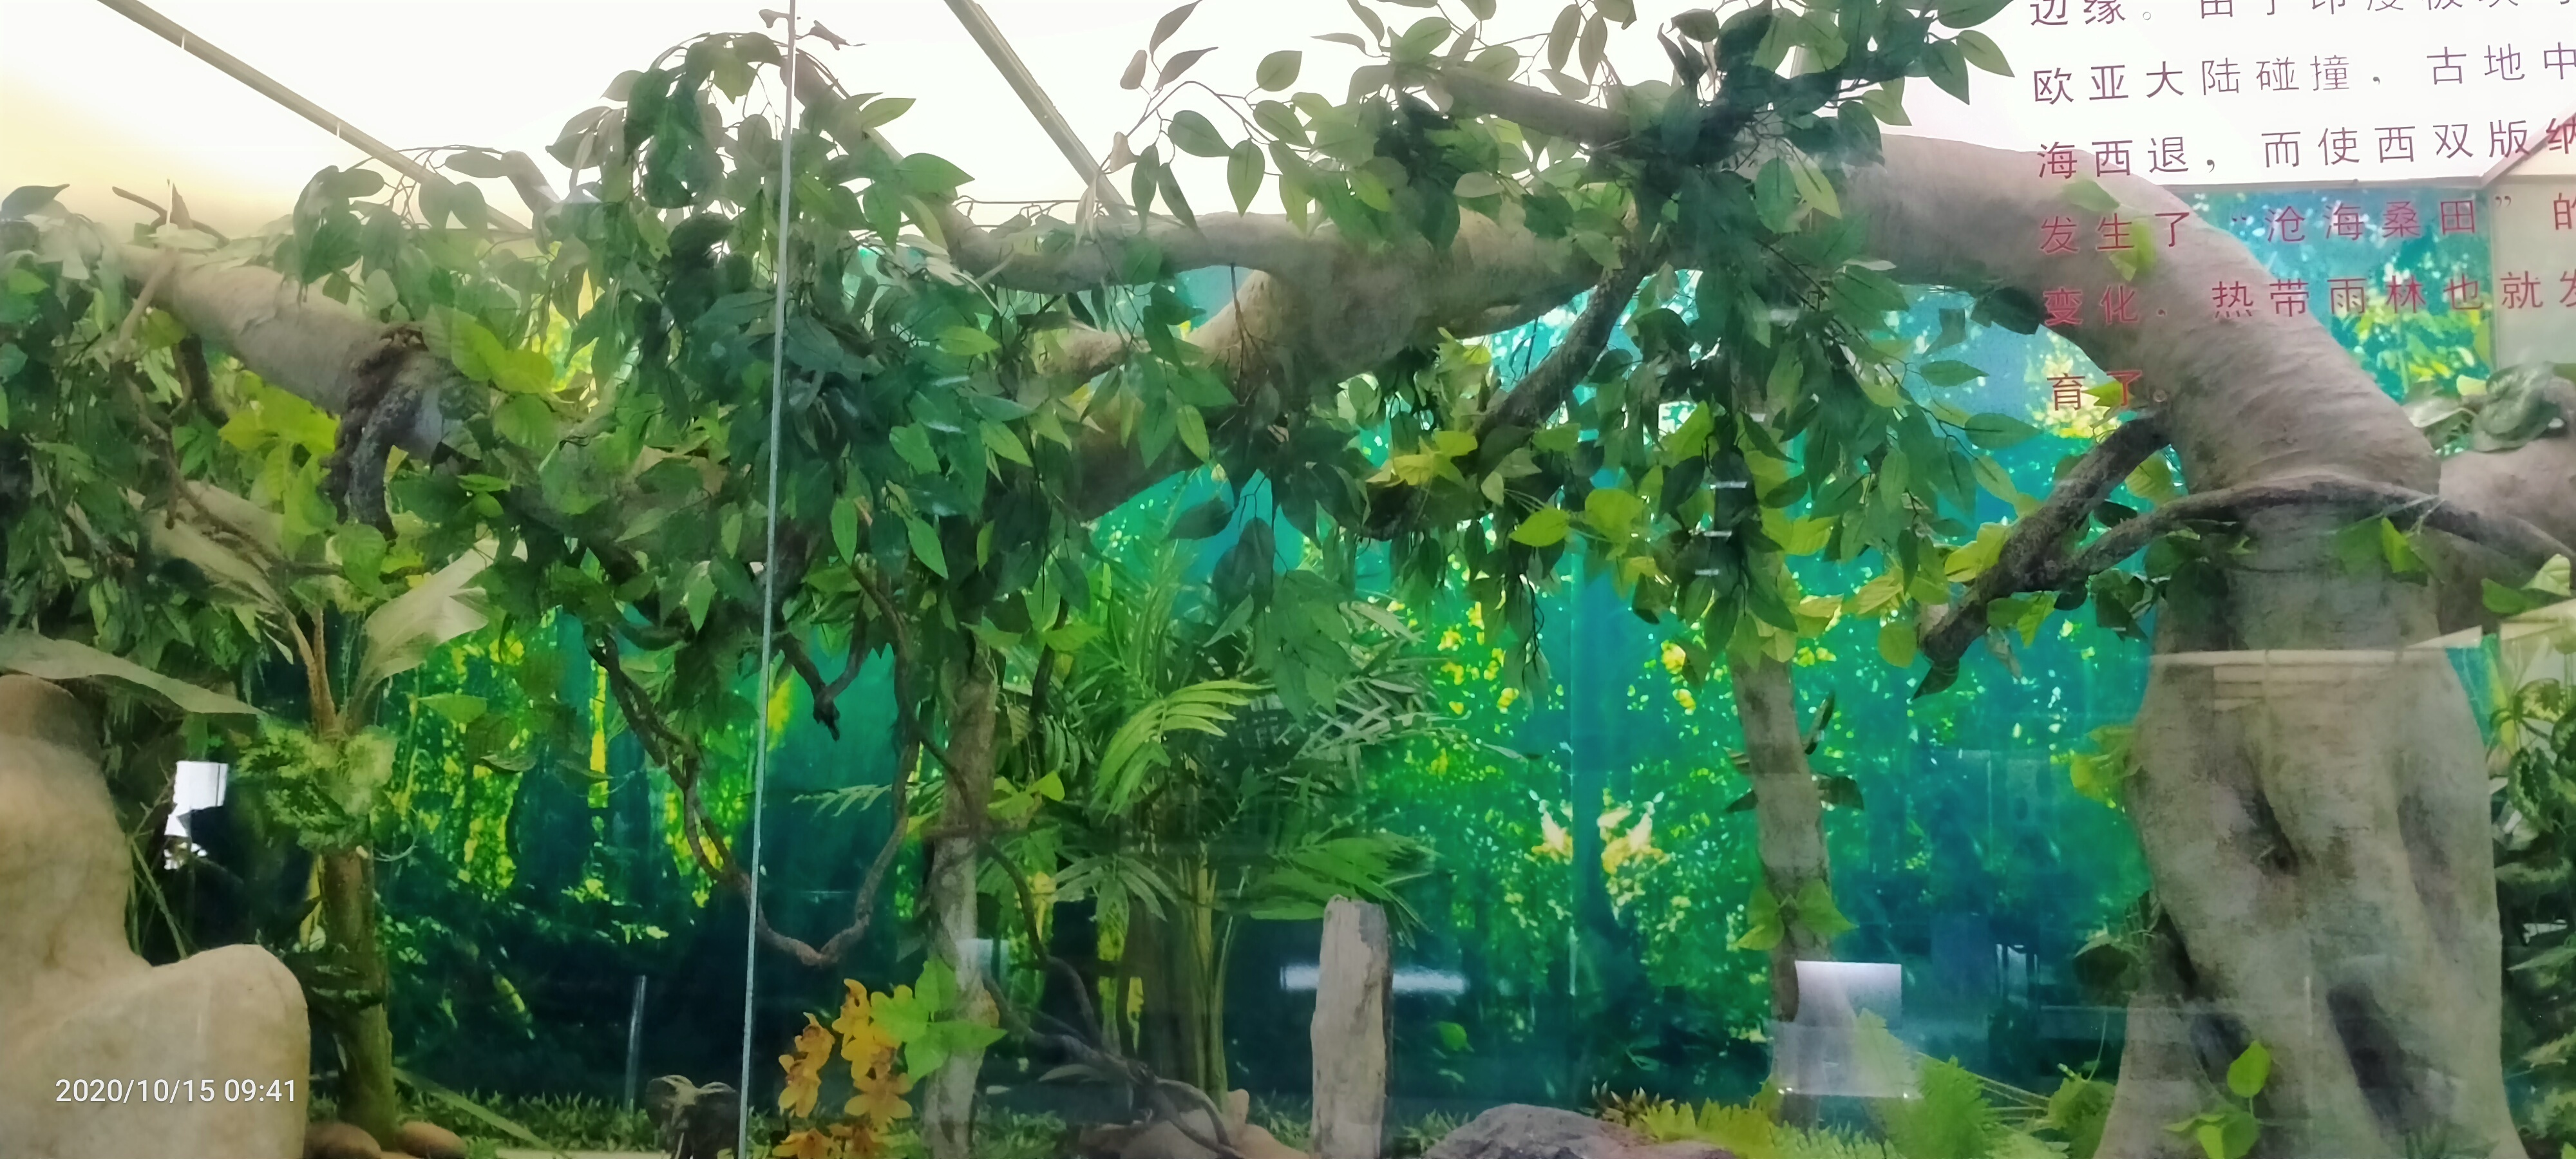 云南自驾游日志分享第14天-中国科学院西双版纳热带植物园